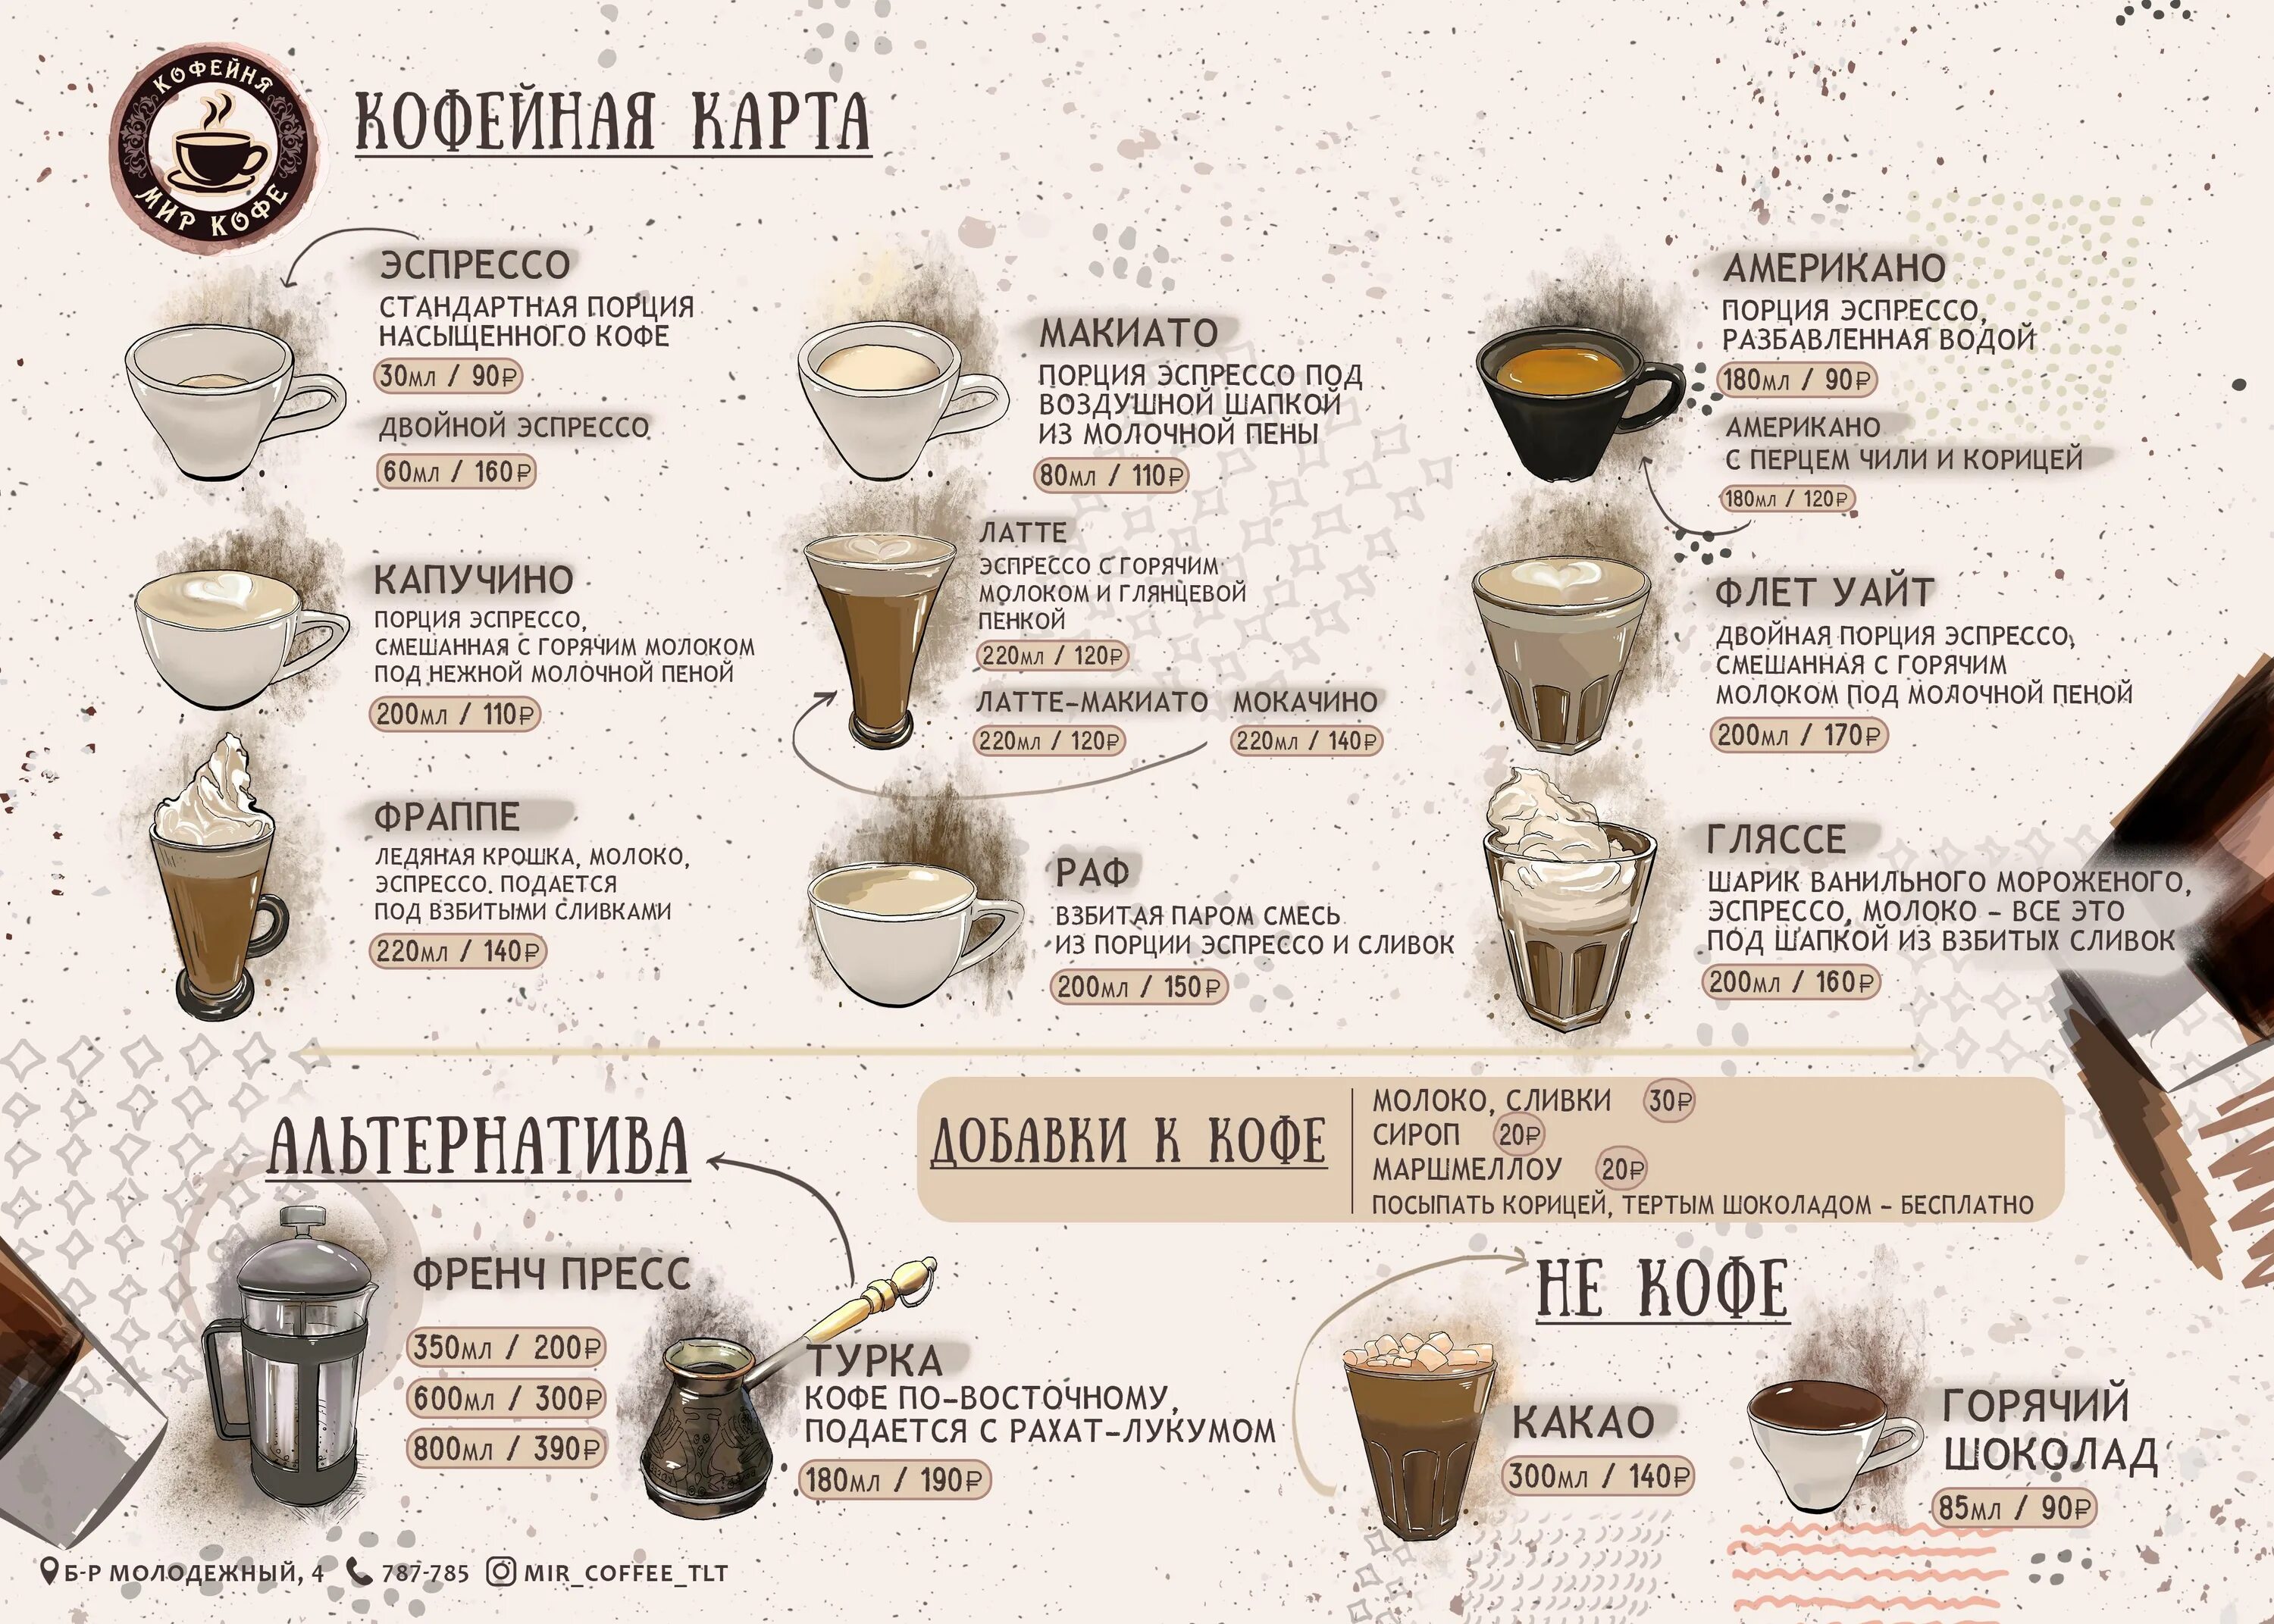 Кофеварка рецепты кофе. Технологическая карта бариста пропорции кофейных напитков. Латте макиато пропорции для кофемашины. Технологическая карта кофе латте капучино кофемашина. Виды кофе Мокачино латте.